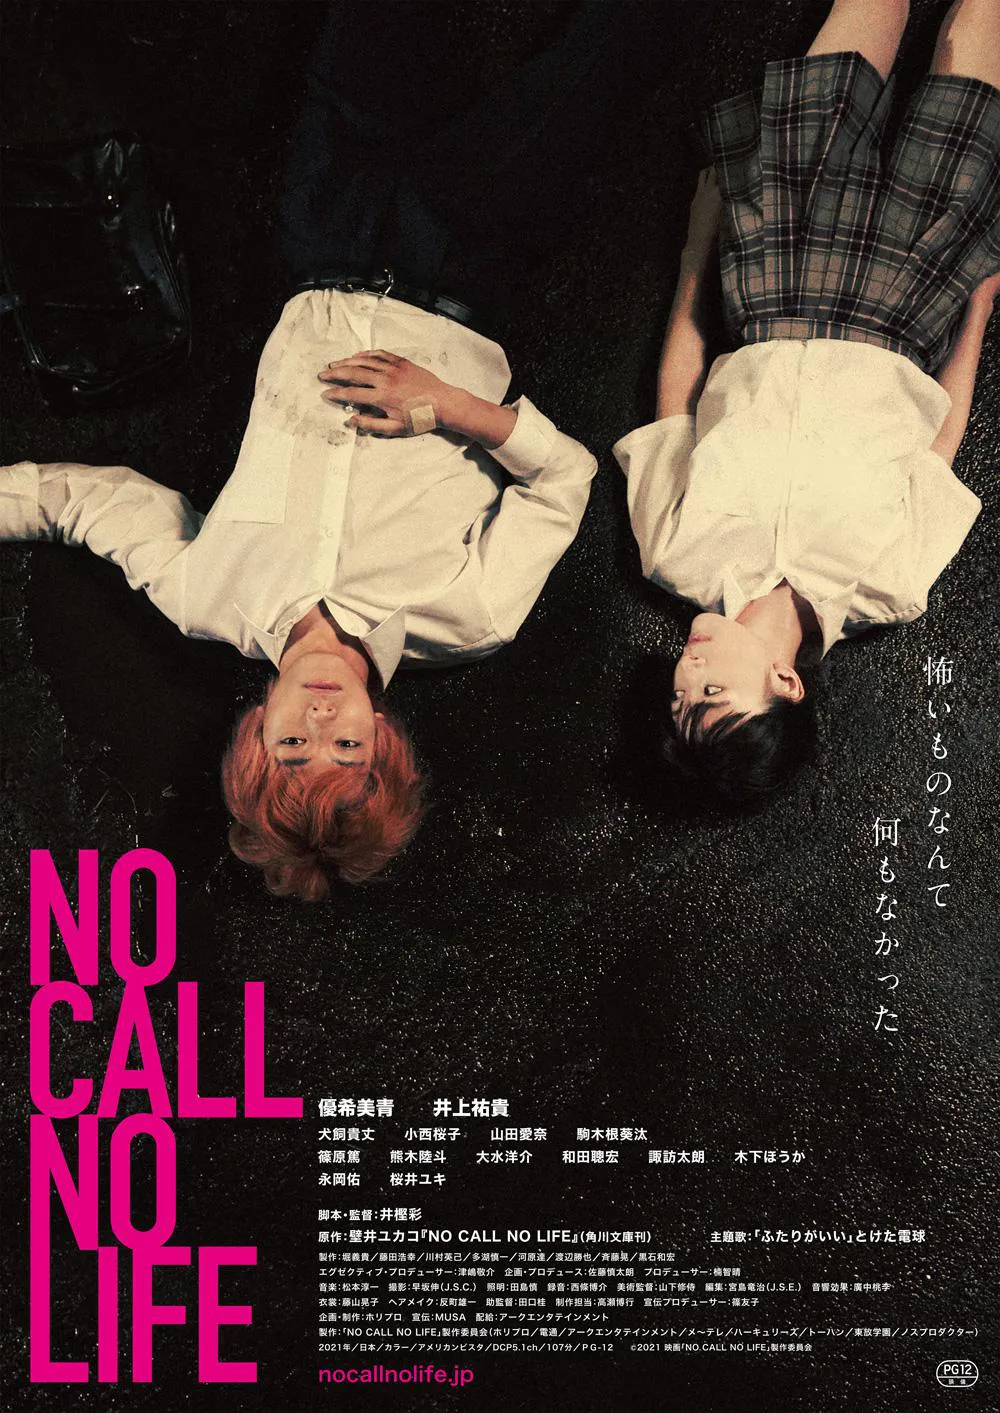 映画「NO CALL NO LIFE」は3月5日(金)から全国で公開